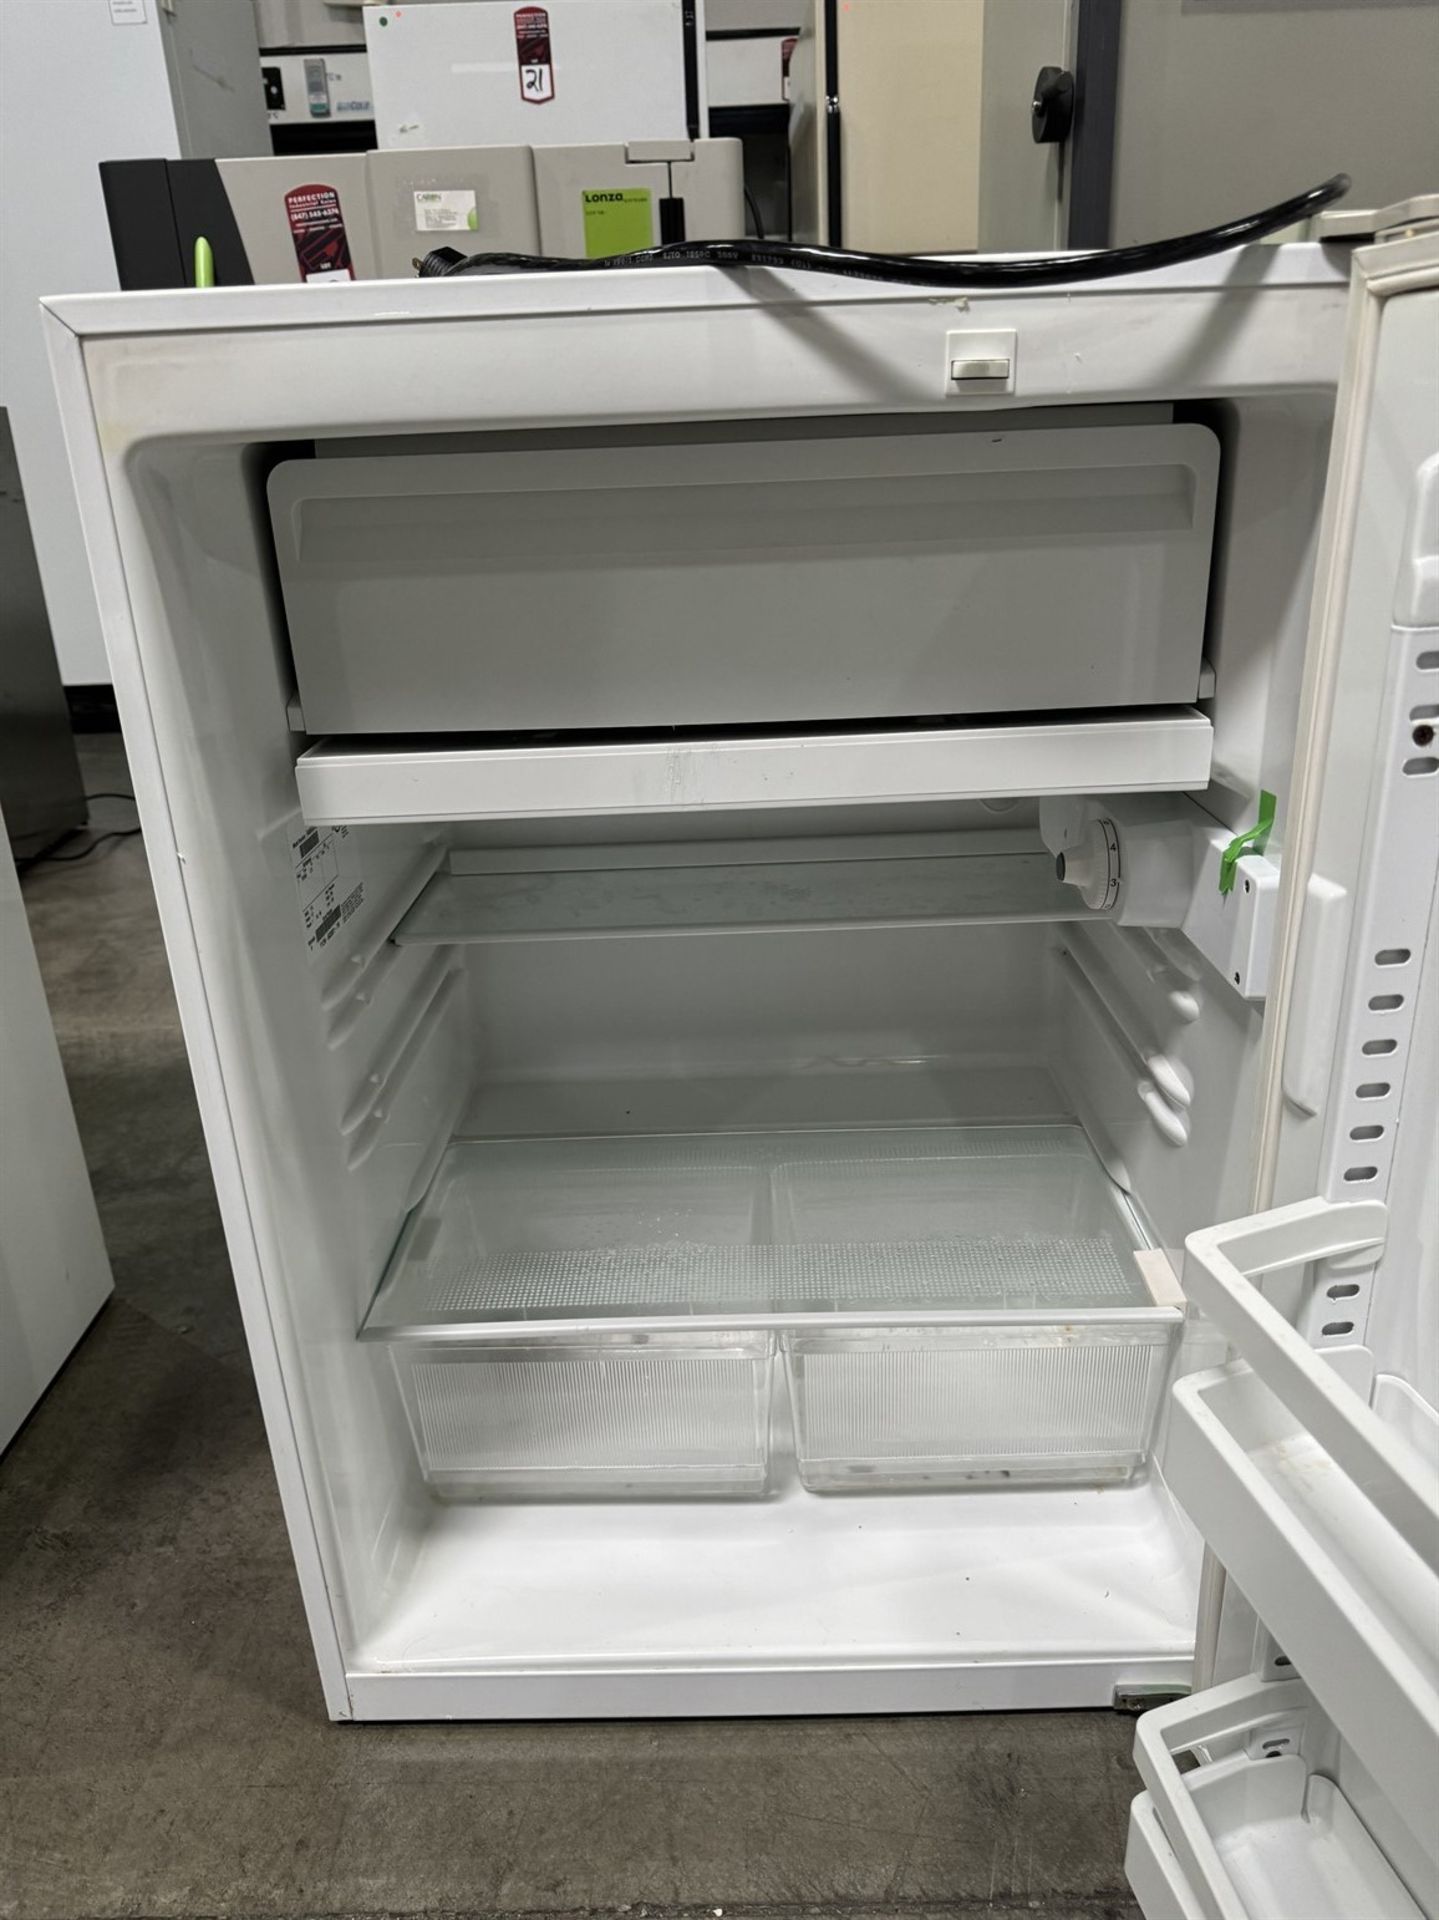 VWR KENDRO LAB R406GA15 Lab Refrigerator, s/n Y12N-603891-YN - Image 3 of 4